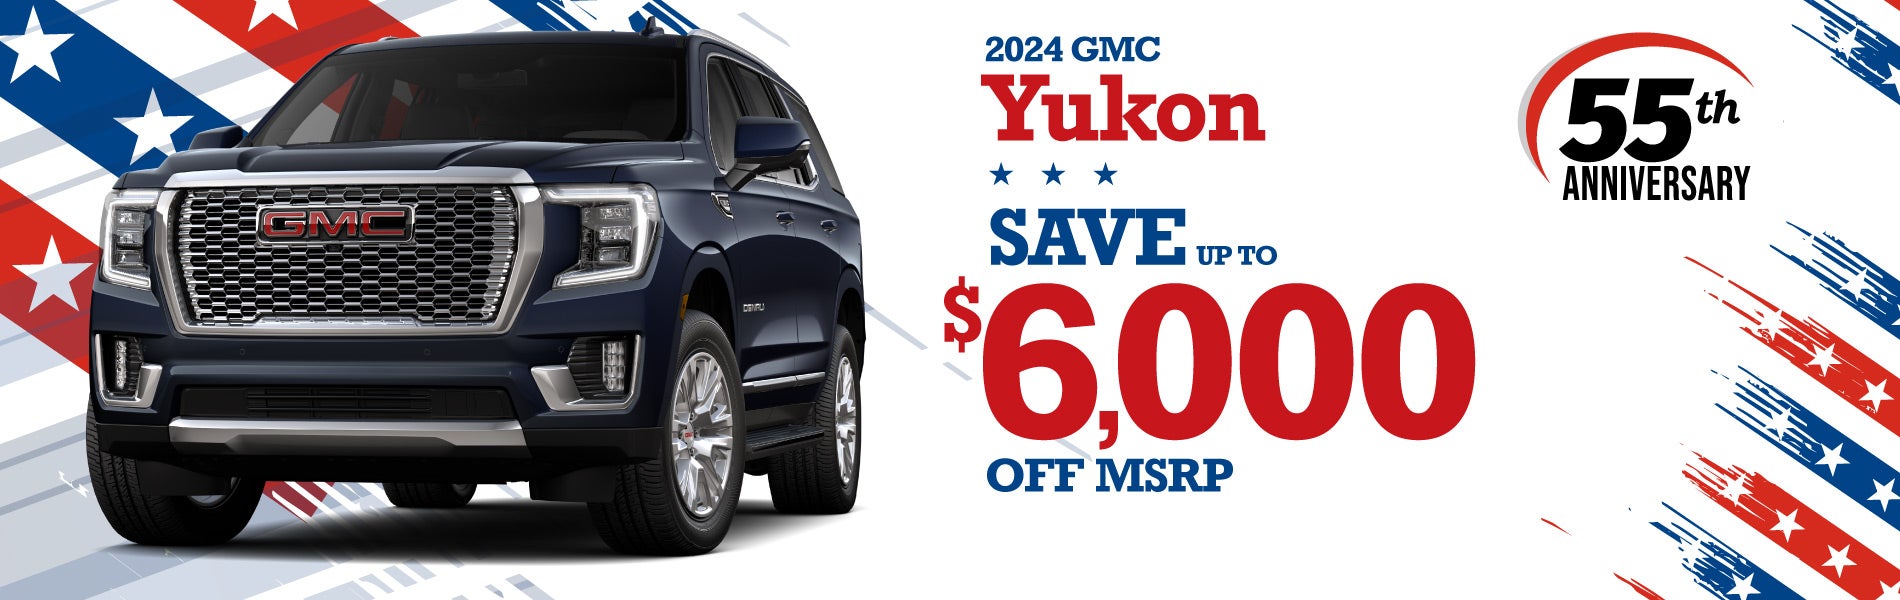 2024 GMC Yukon - SAVE up to $6000